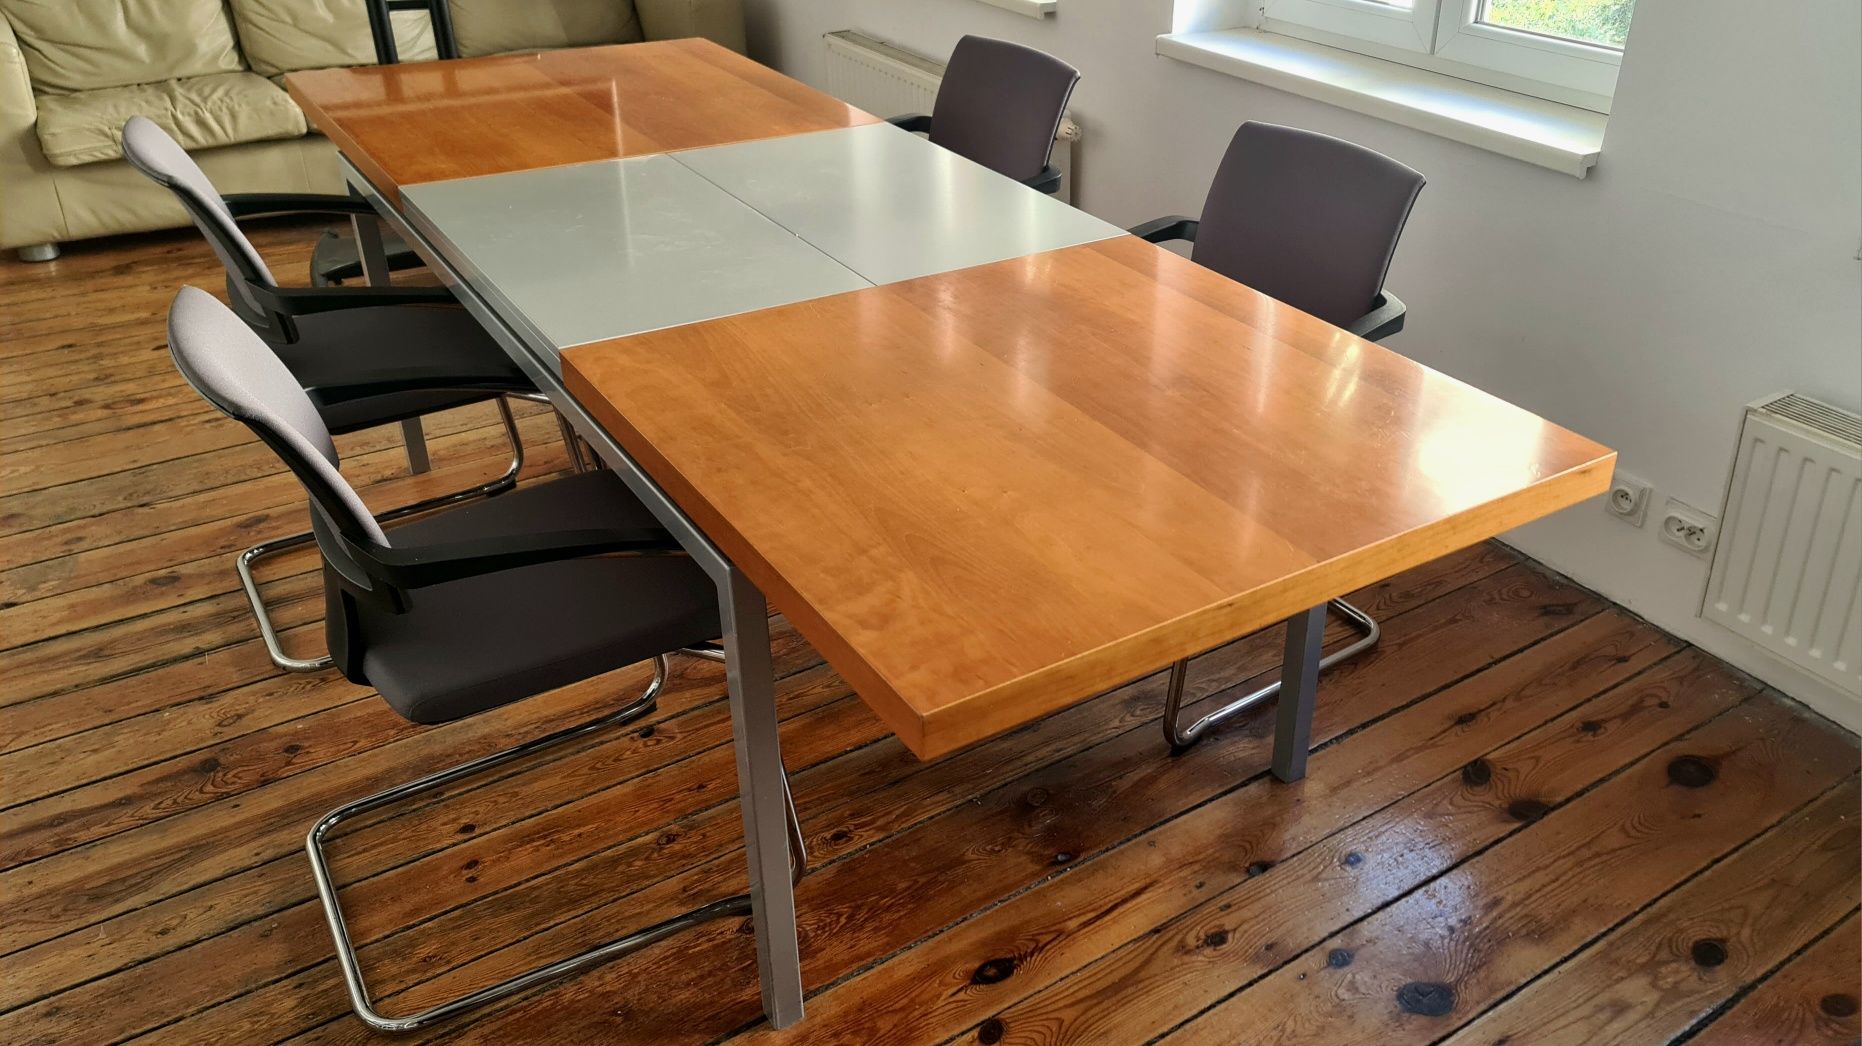 Pełny zestaw do sali konferencyjnej
Rozkładany stół + 4 krzesła